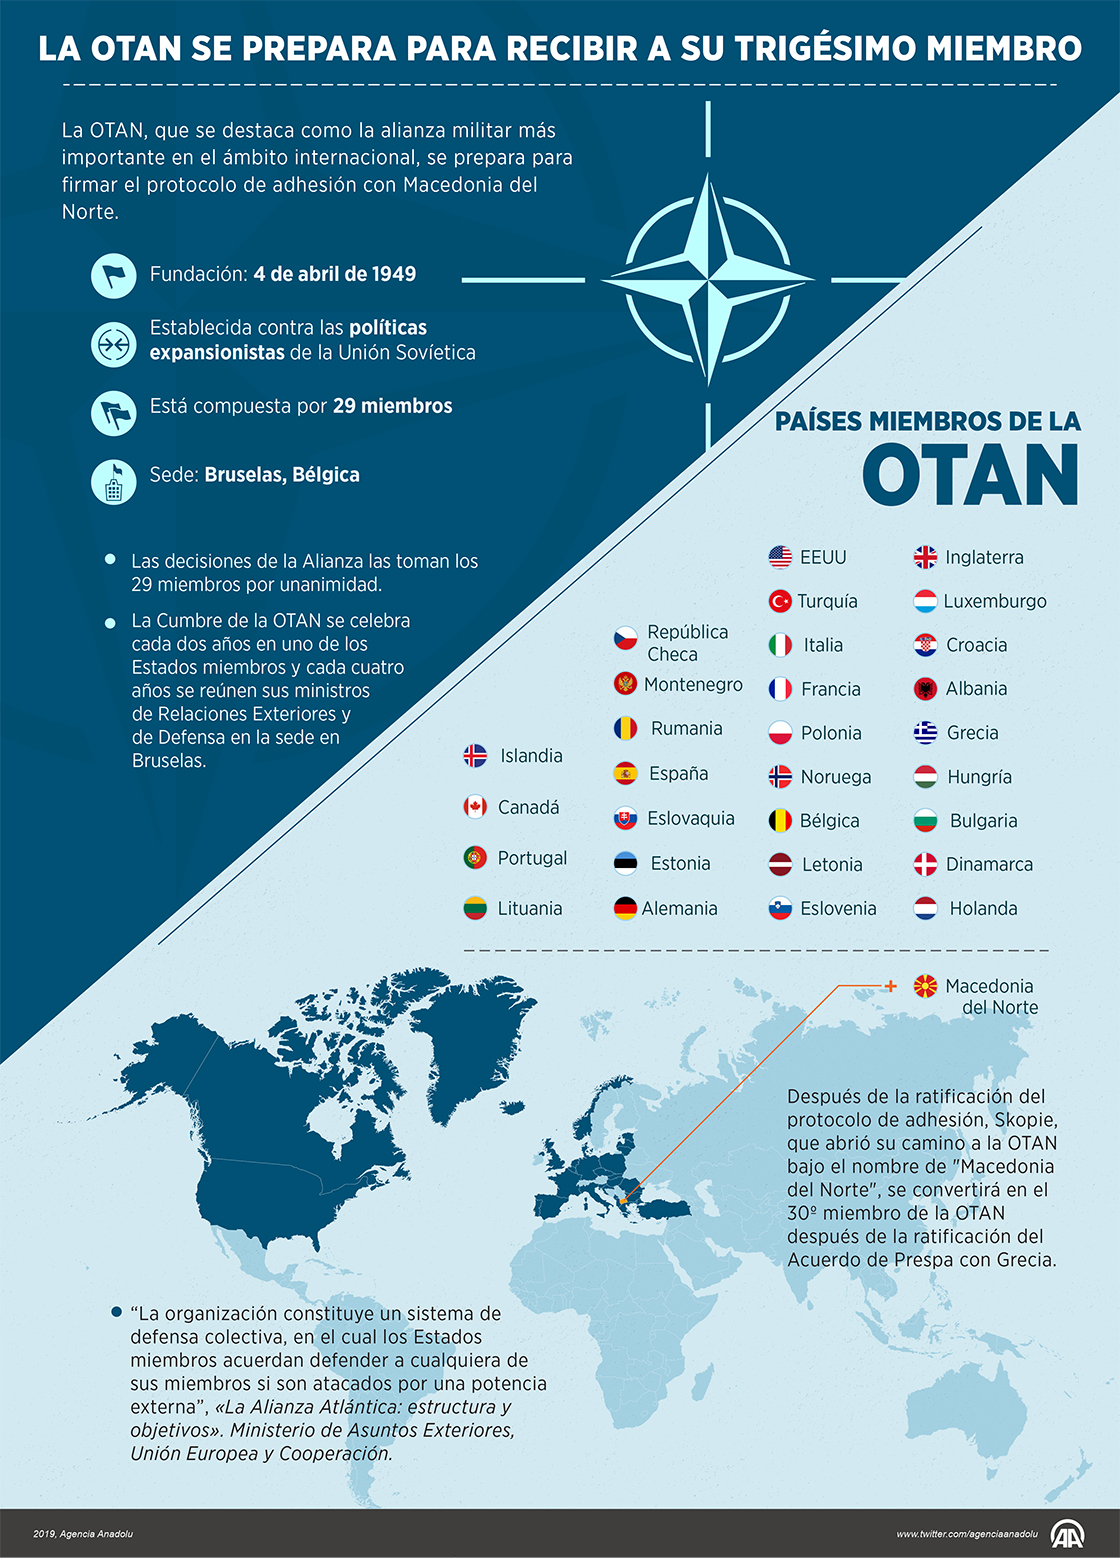 La OTAN se prepara para recibir a su trigésimo miembro